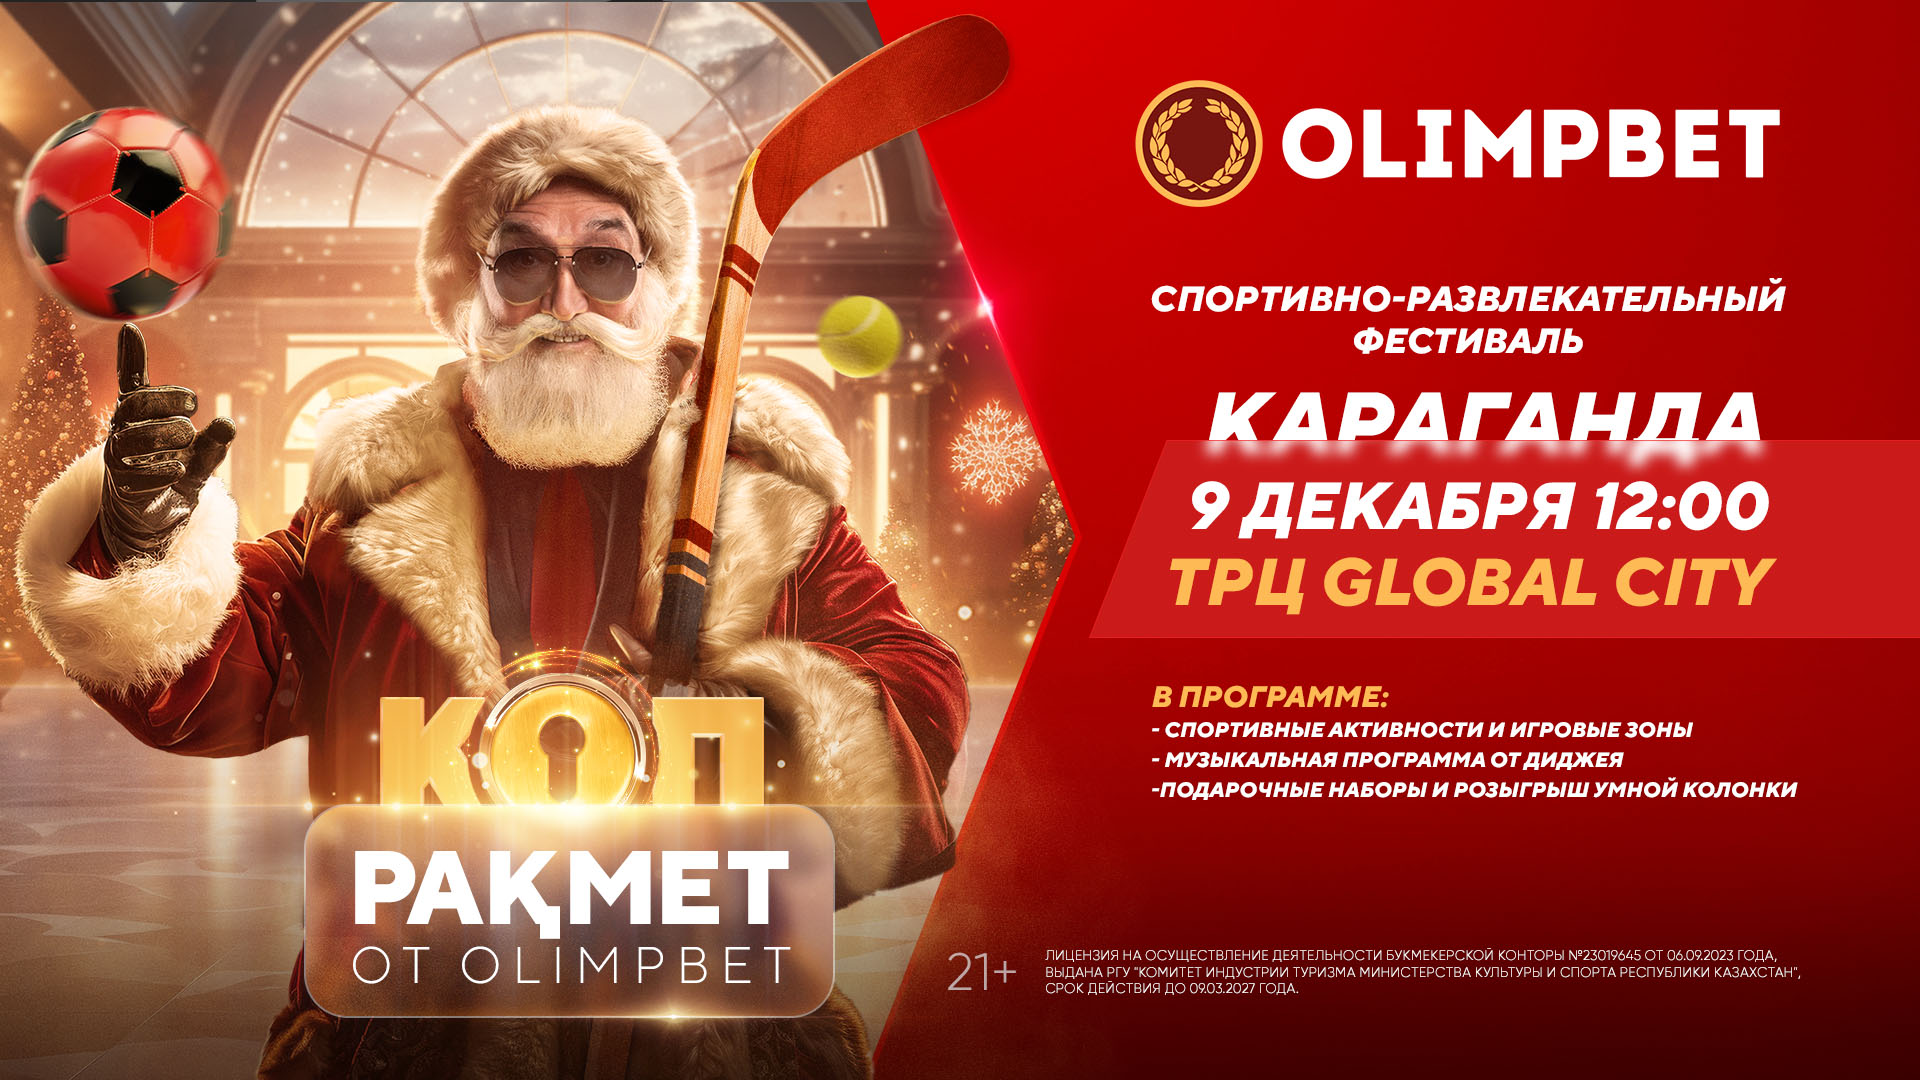 БК Olimpbet анонсировала розыгрыш призов в мероприятии «Коп ракмет» в Караганде